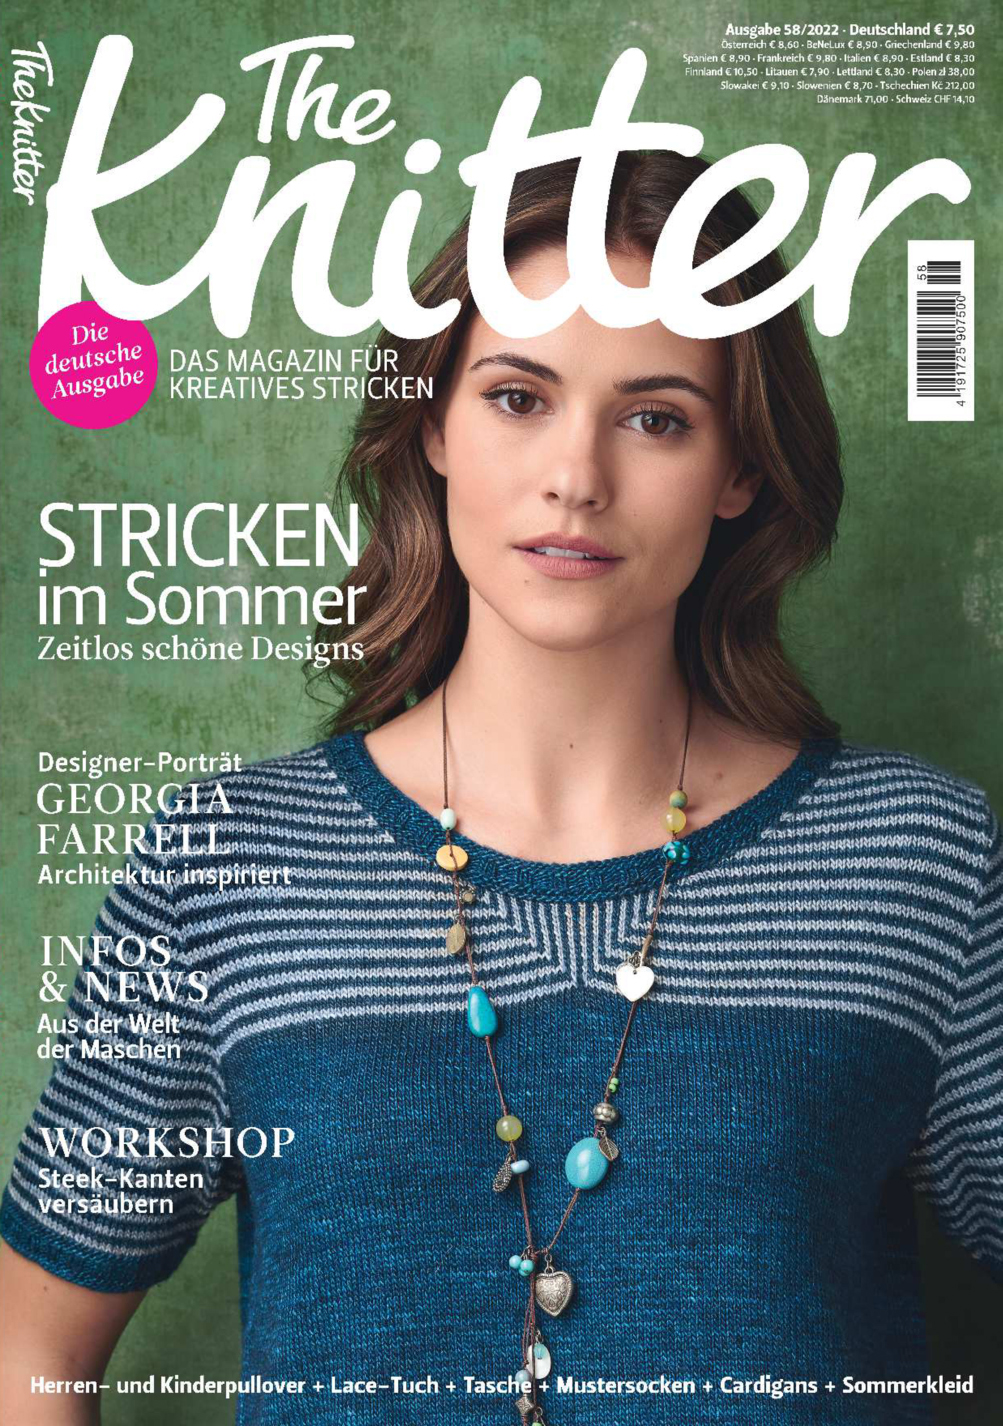 E-Paper: The Knitter 58/2022 - Stricken im Sommer